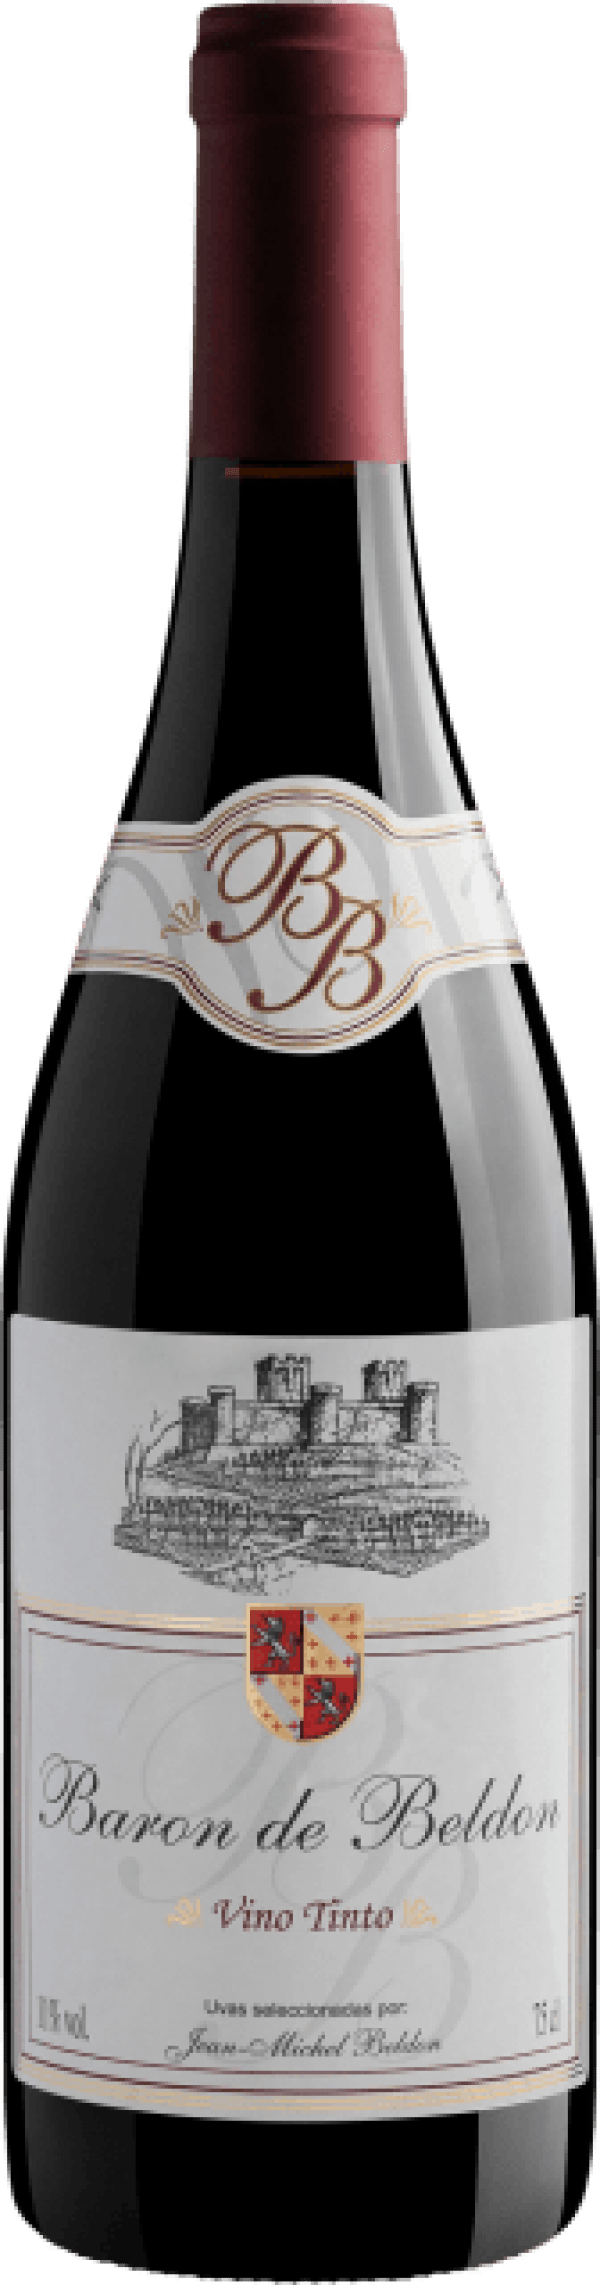 Baron de Beldon Vino Tinto 2020